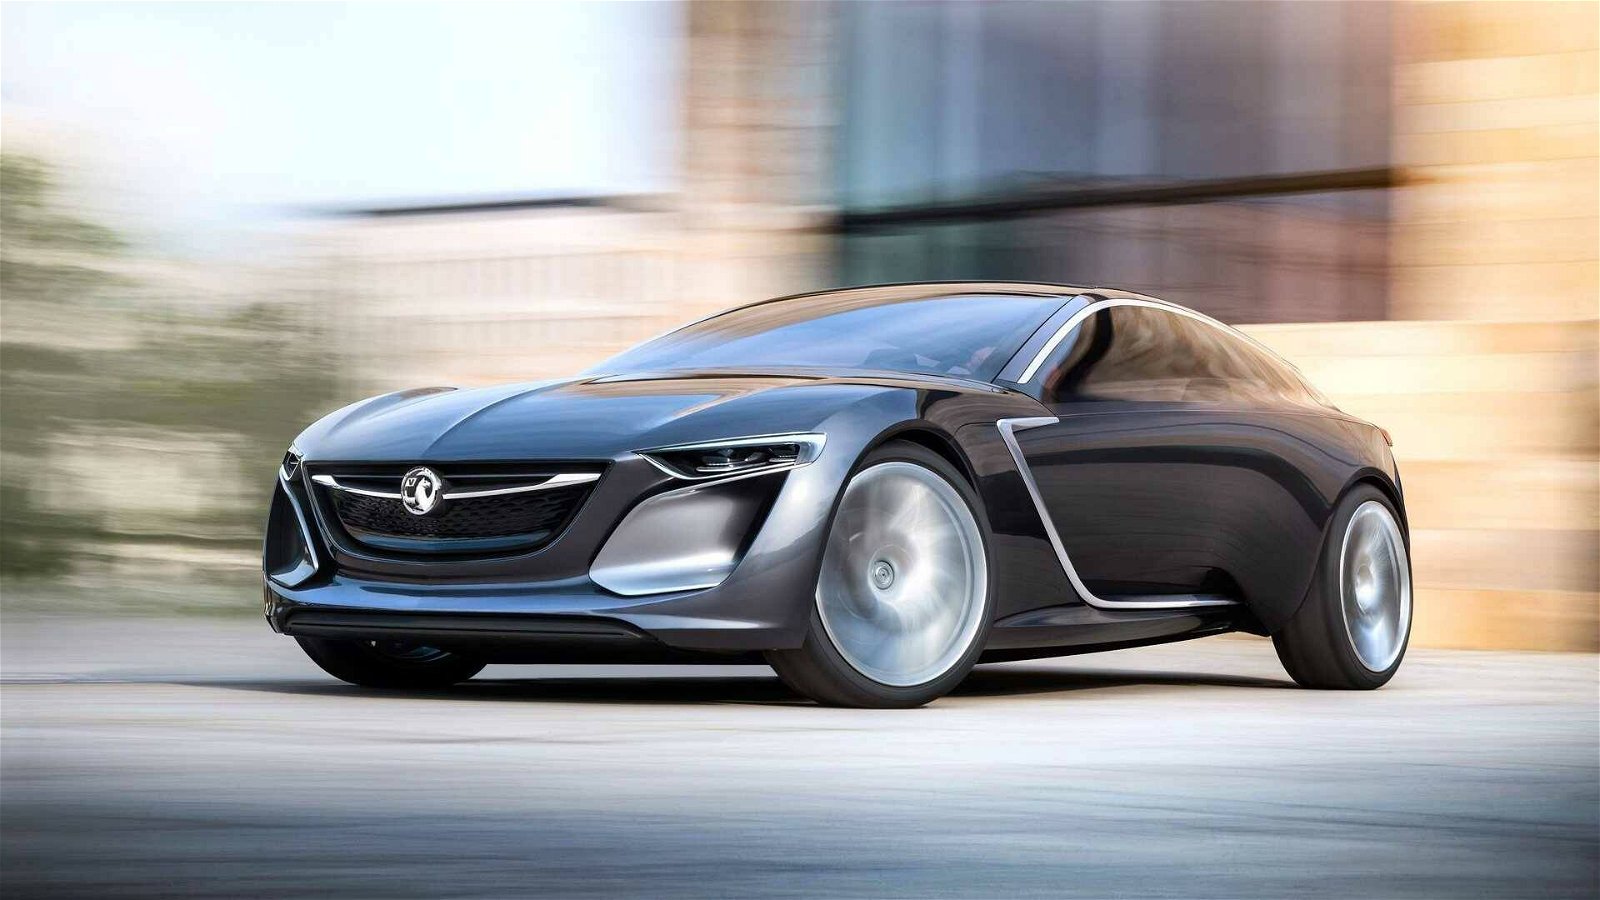 Immagine di Opel Monza, nuovo crossover elettrico in arrivo?